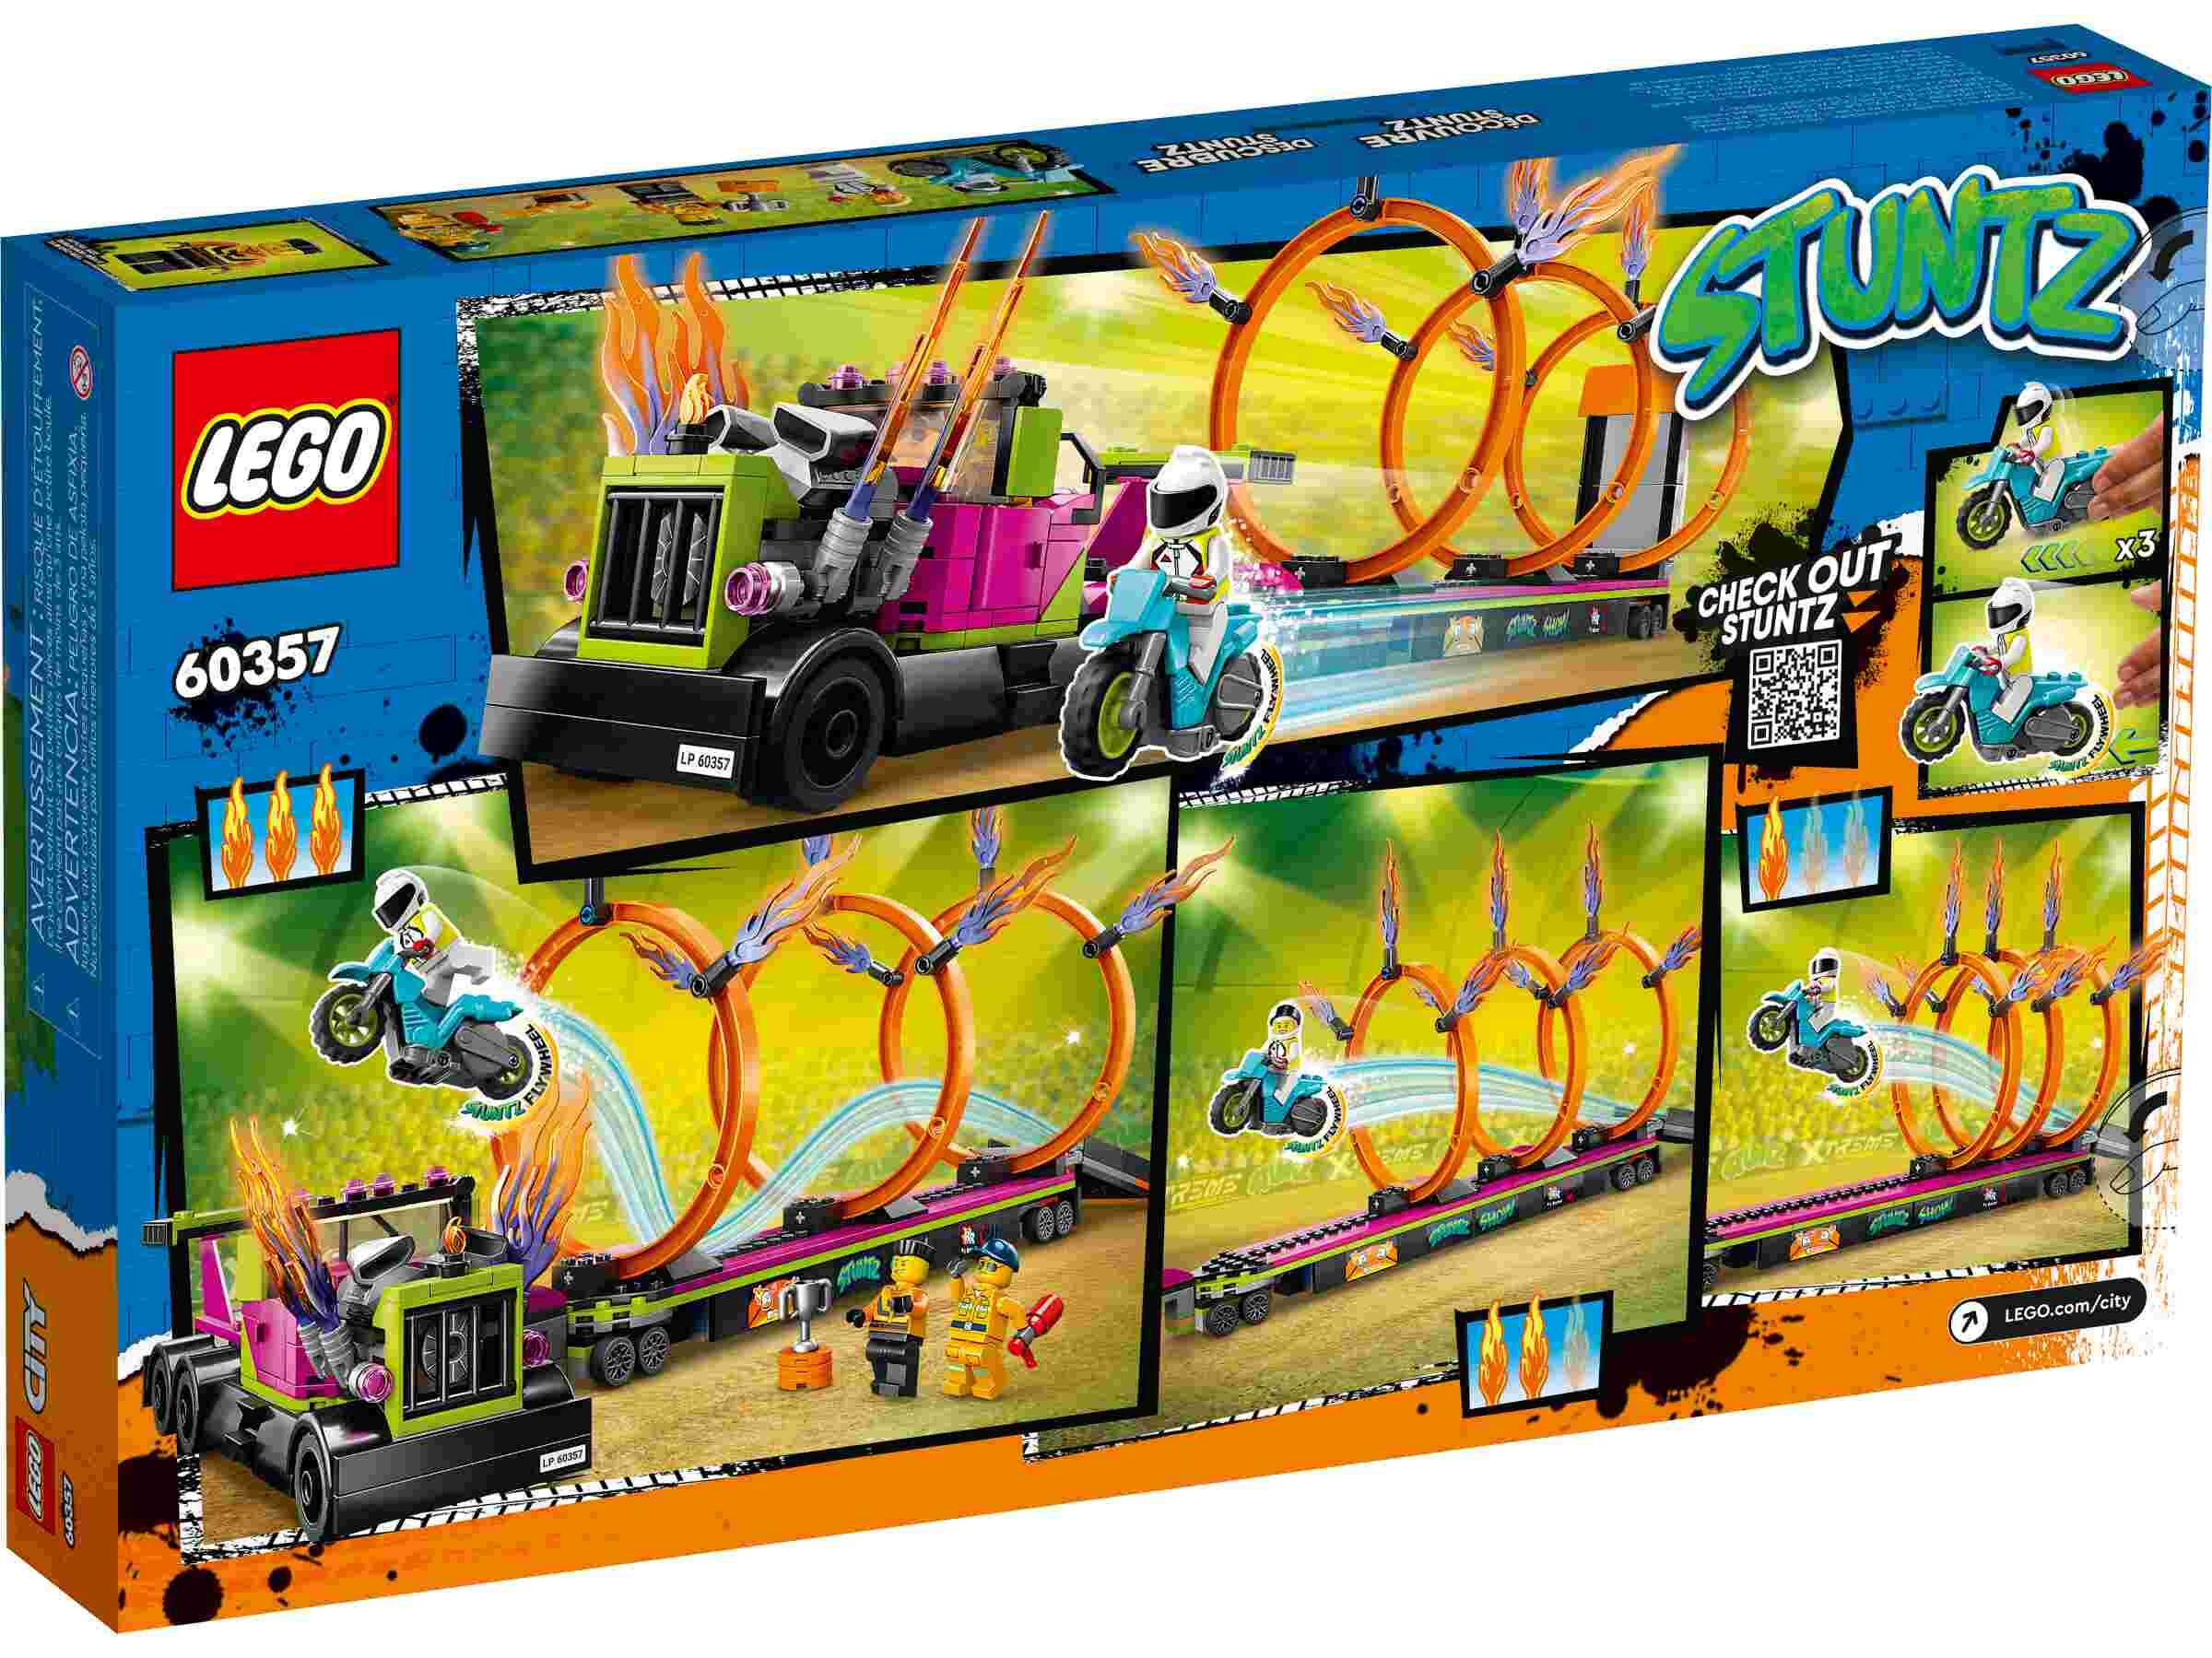 LEGO 60357 City Stunttruck mit Feuerreifen-Challenge, Stuntz, 3 Minifiguren